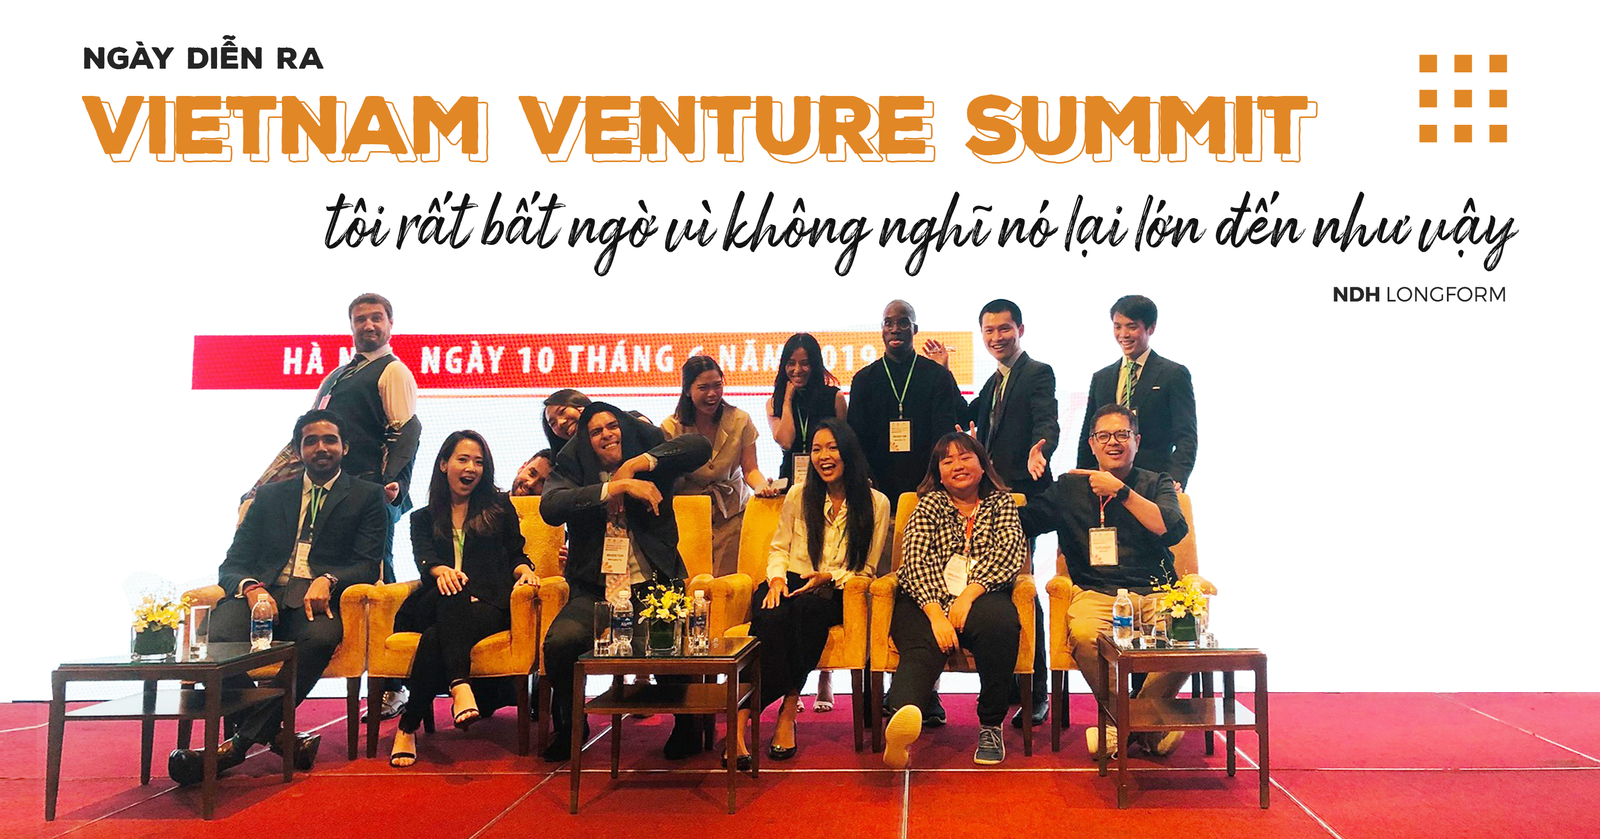 ‘Bà mối’ cho các thương vụ đầu tư tại Việt Nam: Startup với tôi giống như hơi thở rồi - Ảnh 4.